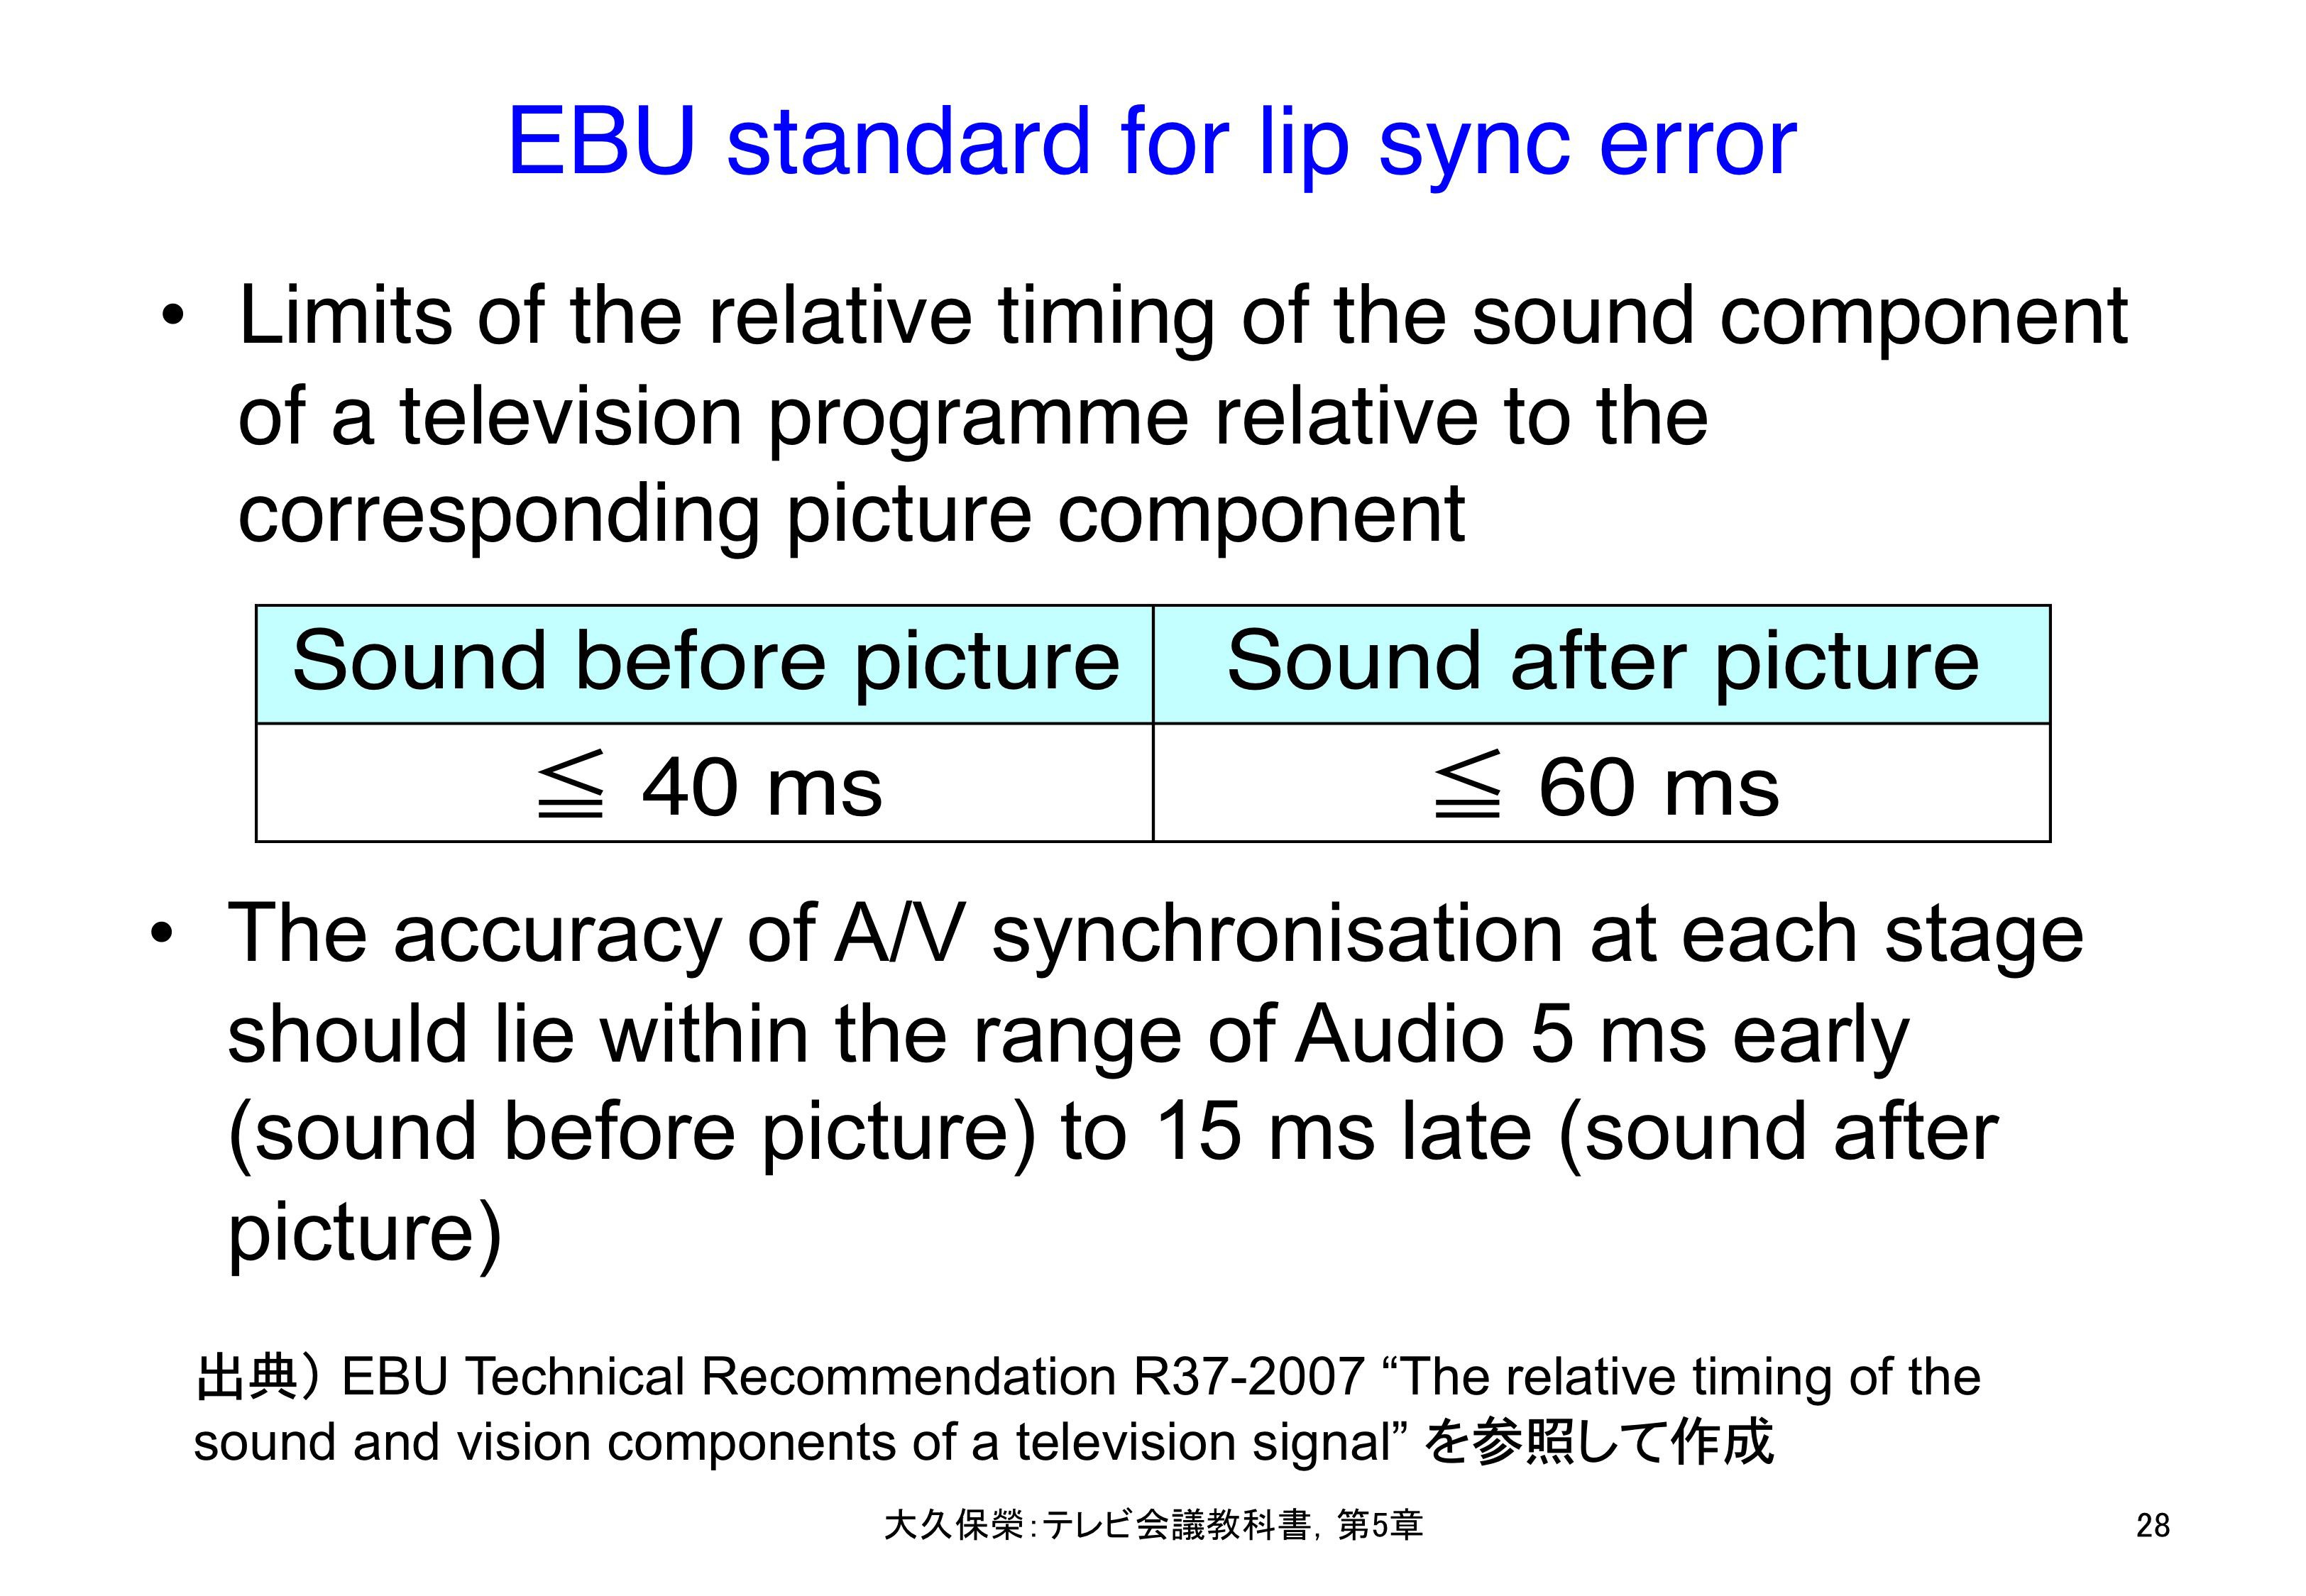 図5-28 EBUのリップシンク誤差規定